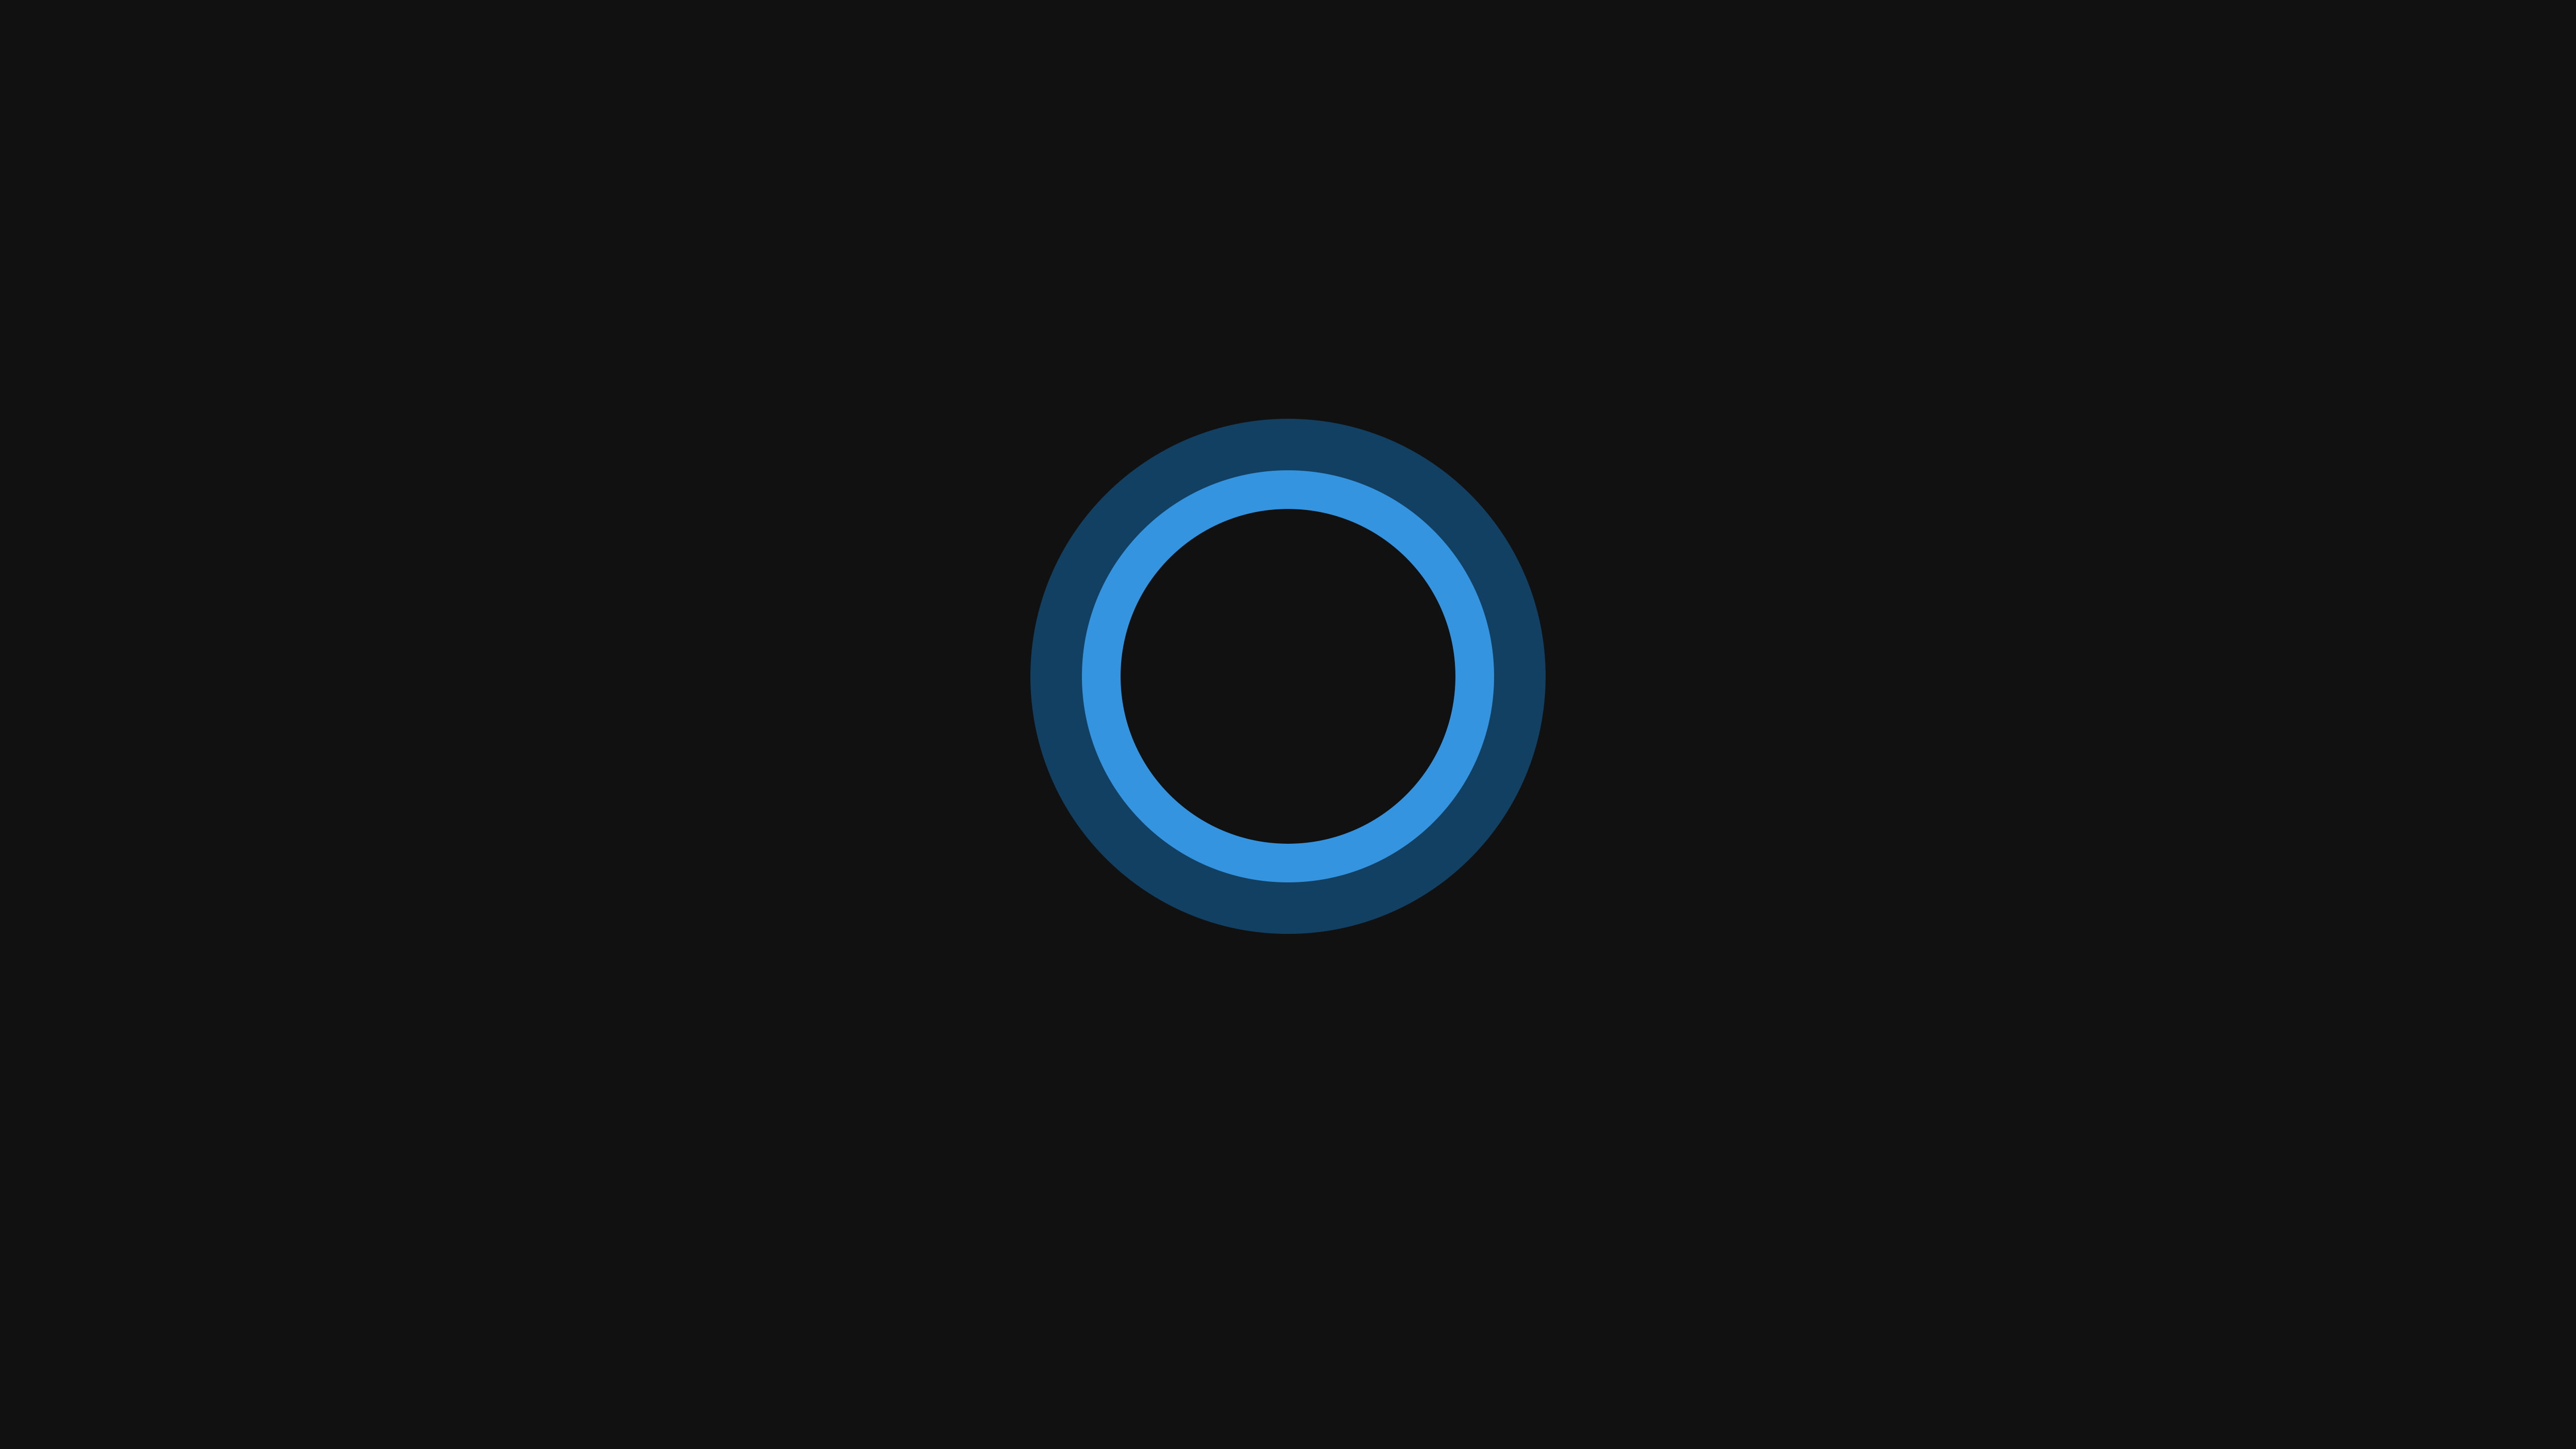 Windows 10, circle, minimalism, Cortana